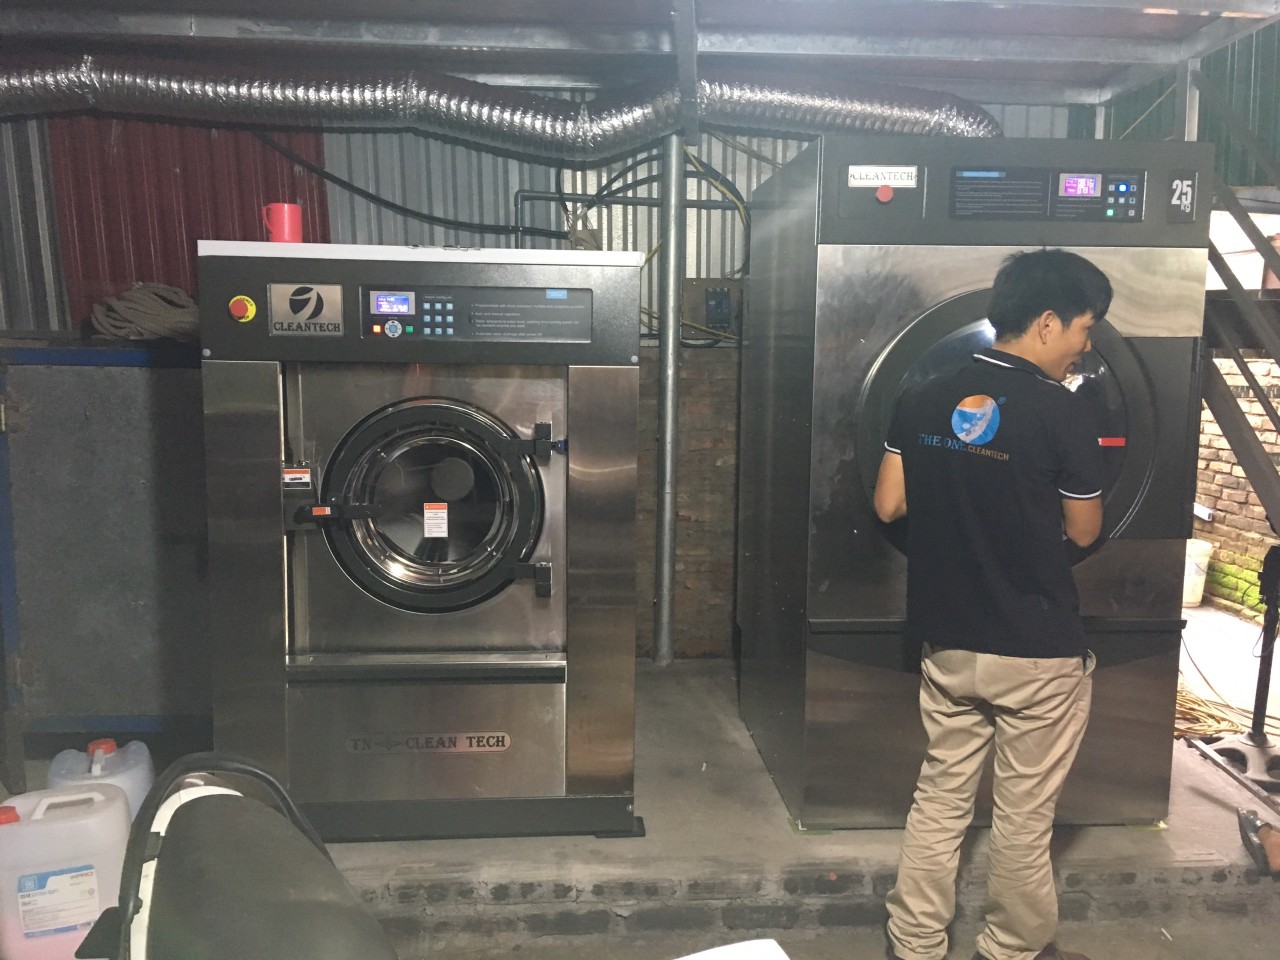 Bán máy giặt công nghiệp tại Từ Sơn - Bắc Ninh 